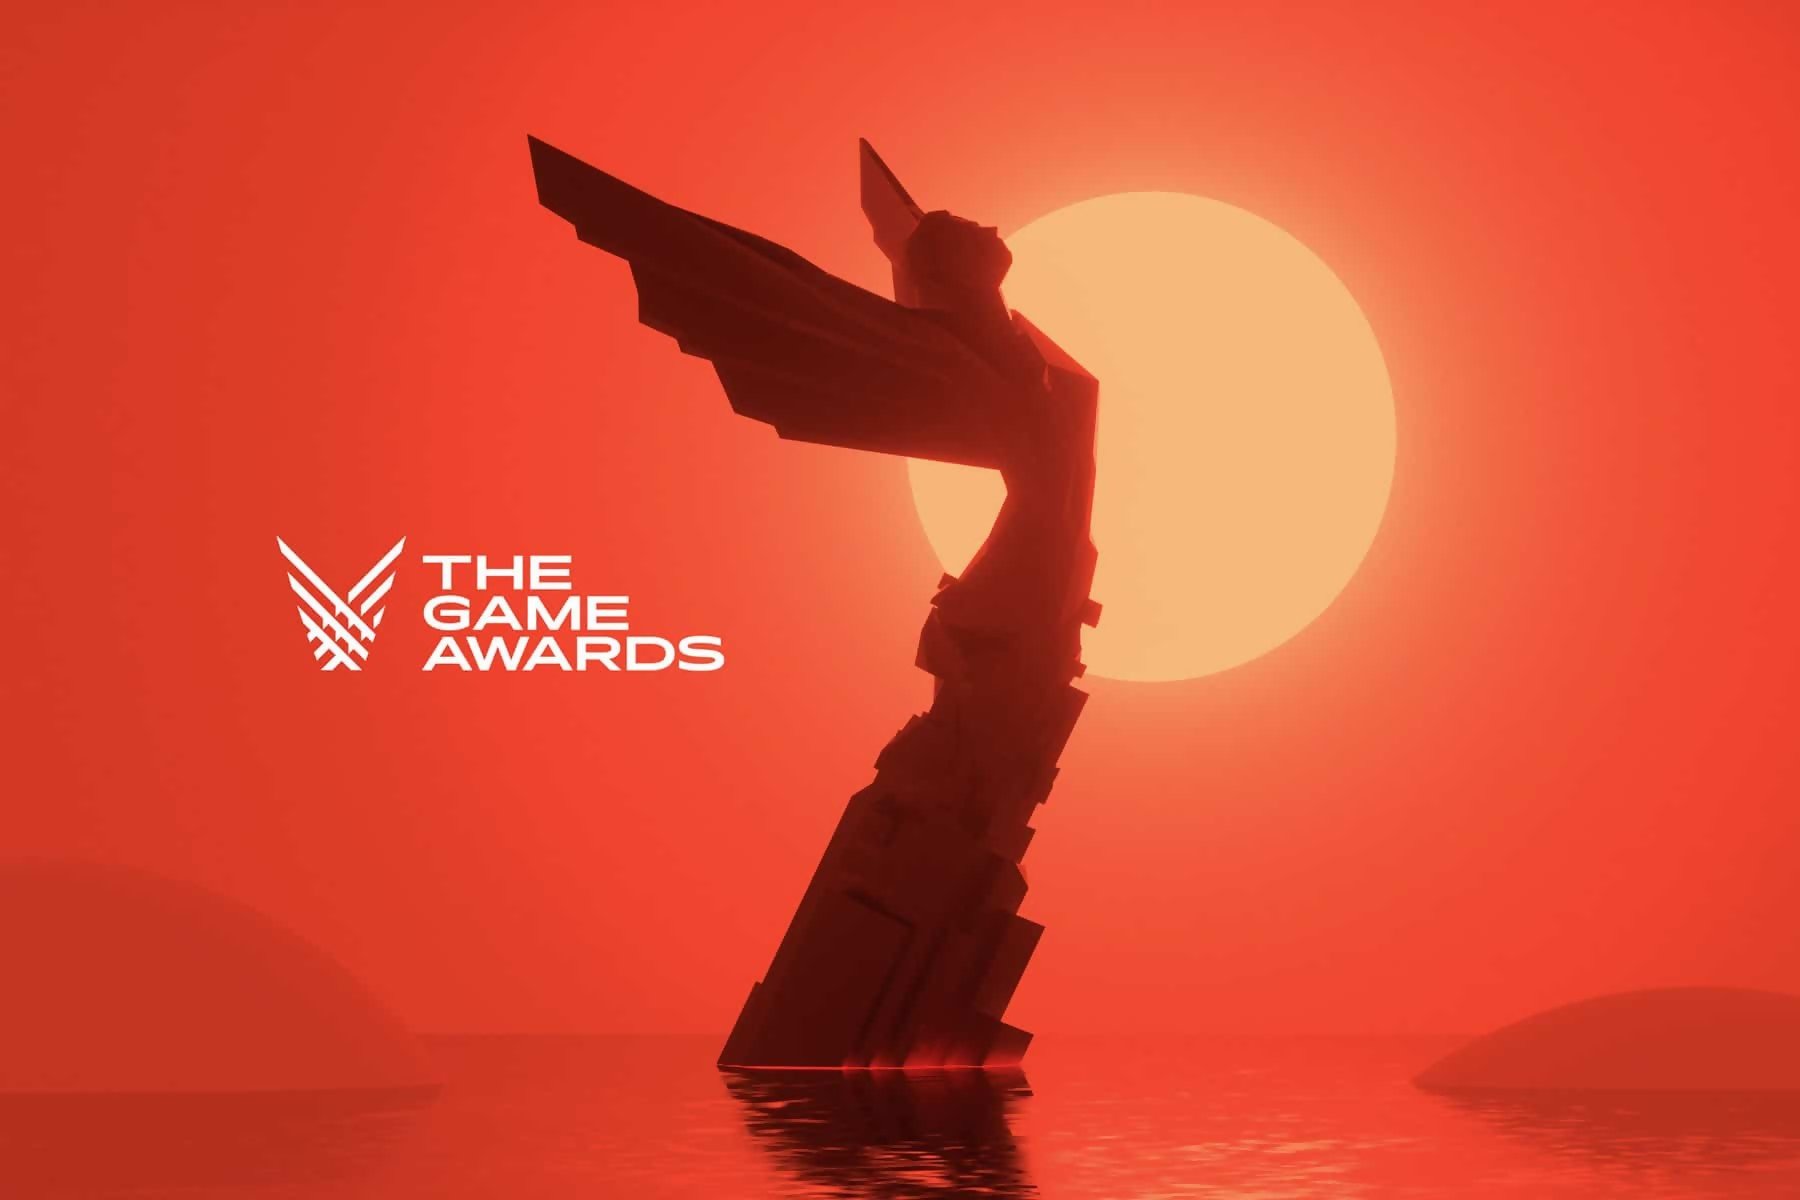 Game Awards : parmi ces jeux vidéo, un seul sera celui de l'année, le GOTY